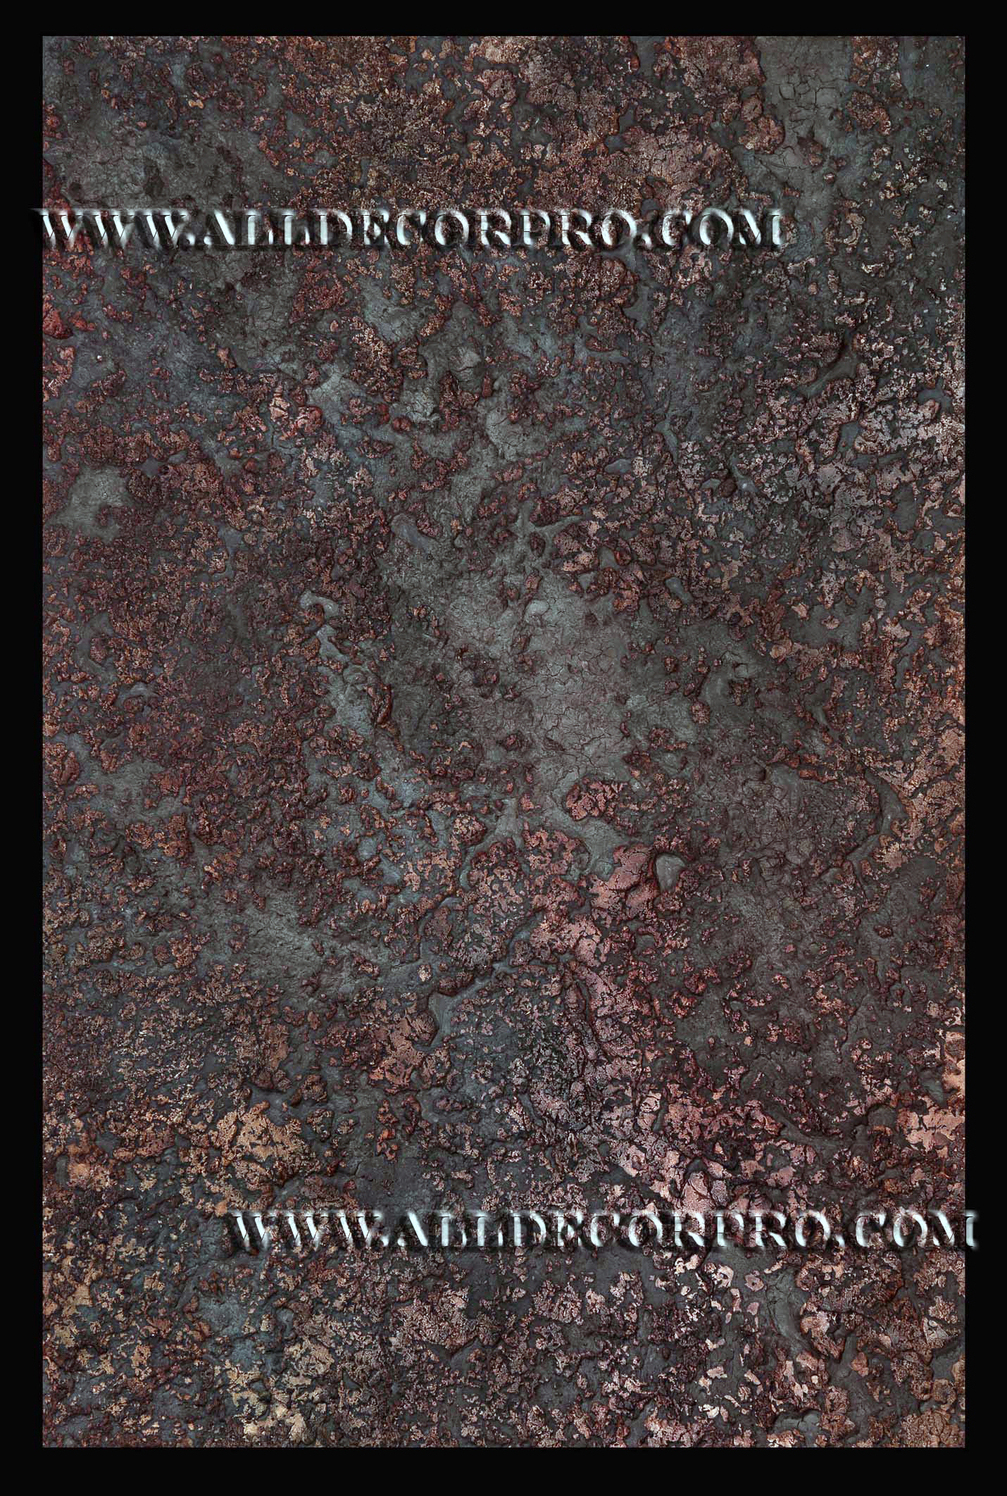 Фактурная декоративная штукатурка имитирующая фактурный красно-коричневый камень